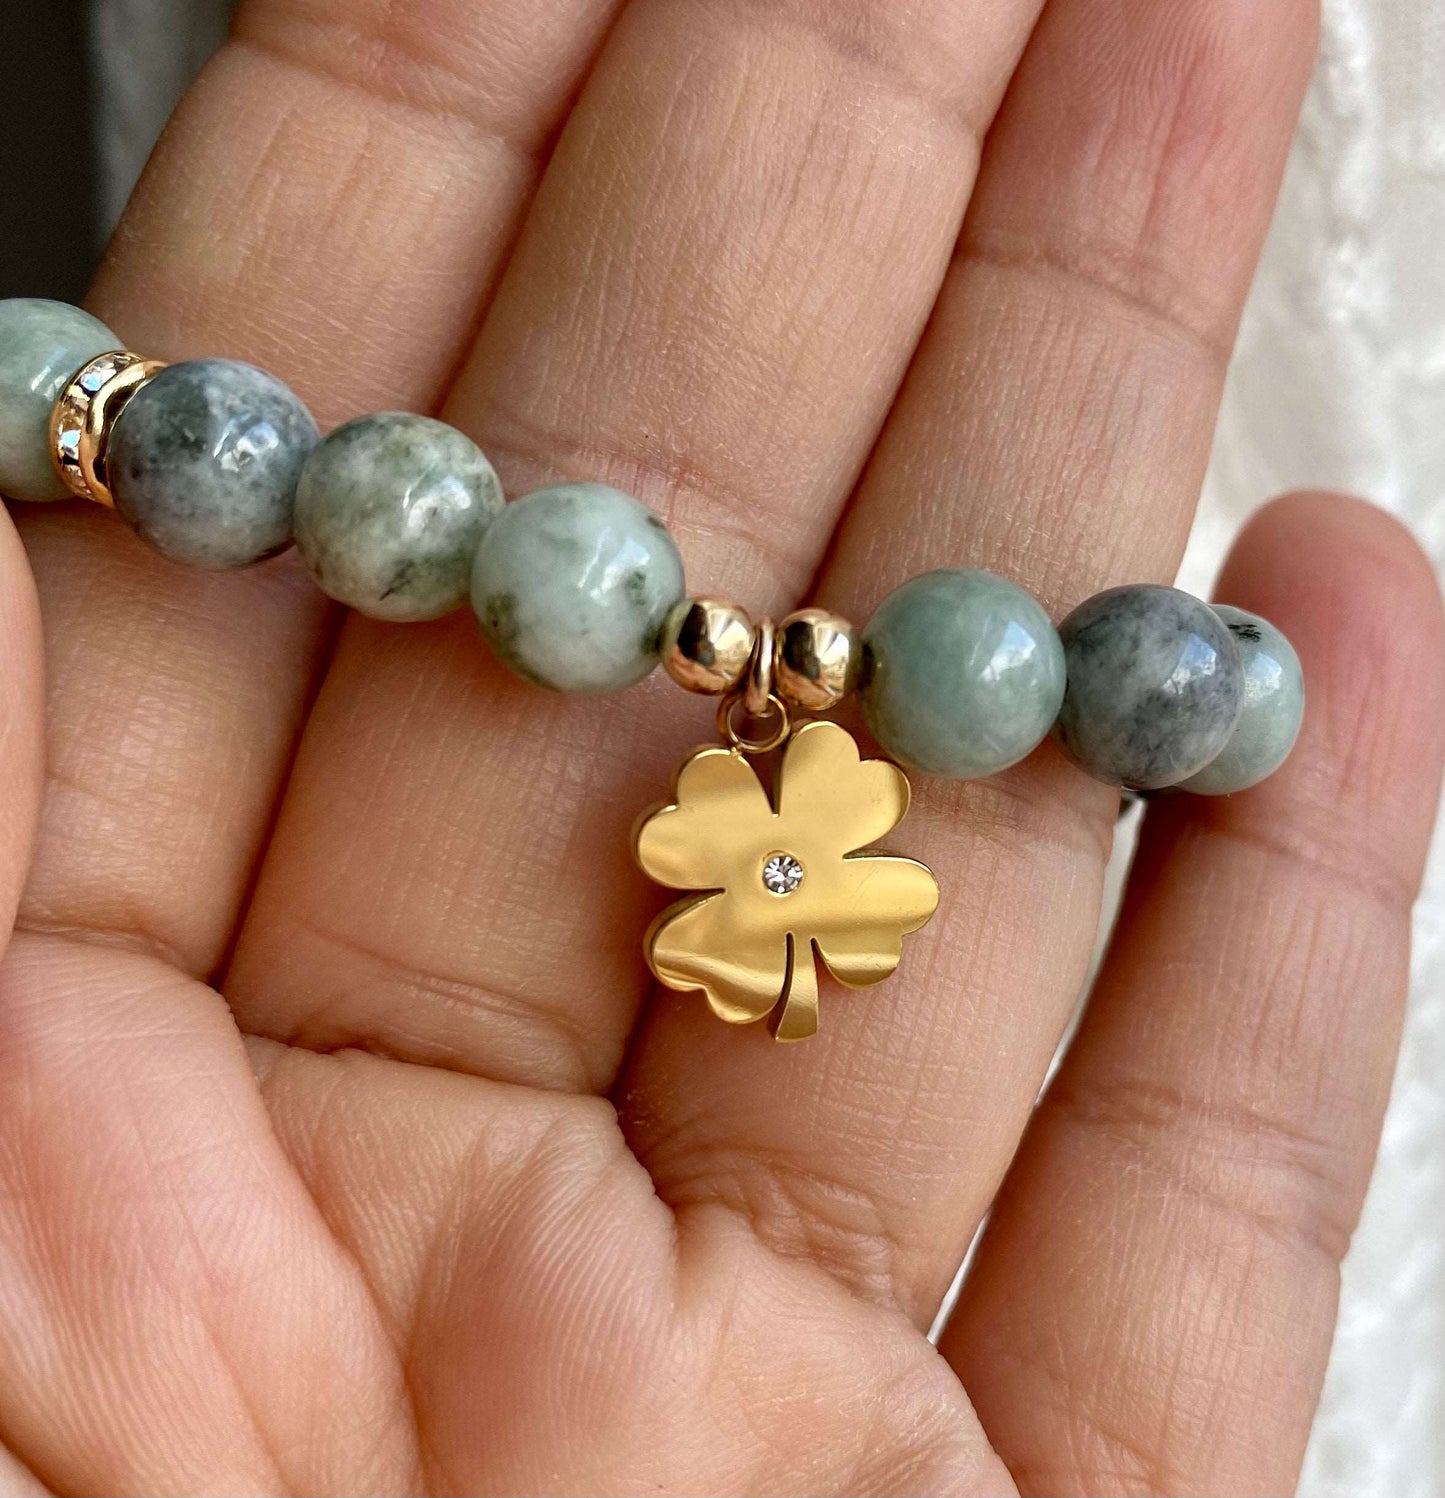 
                  
                    Burma Jade with Clover Leaf Charm Bracelets
                  
                